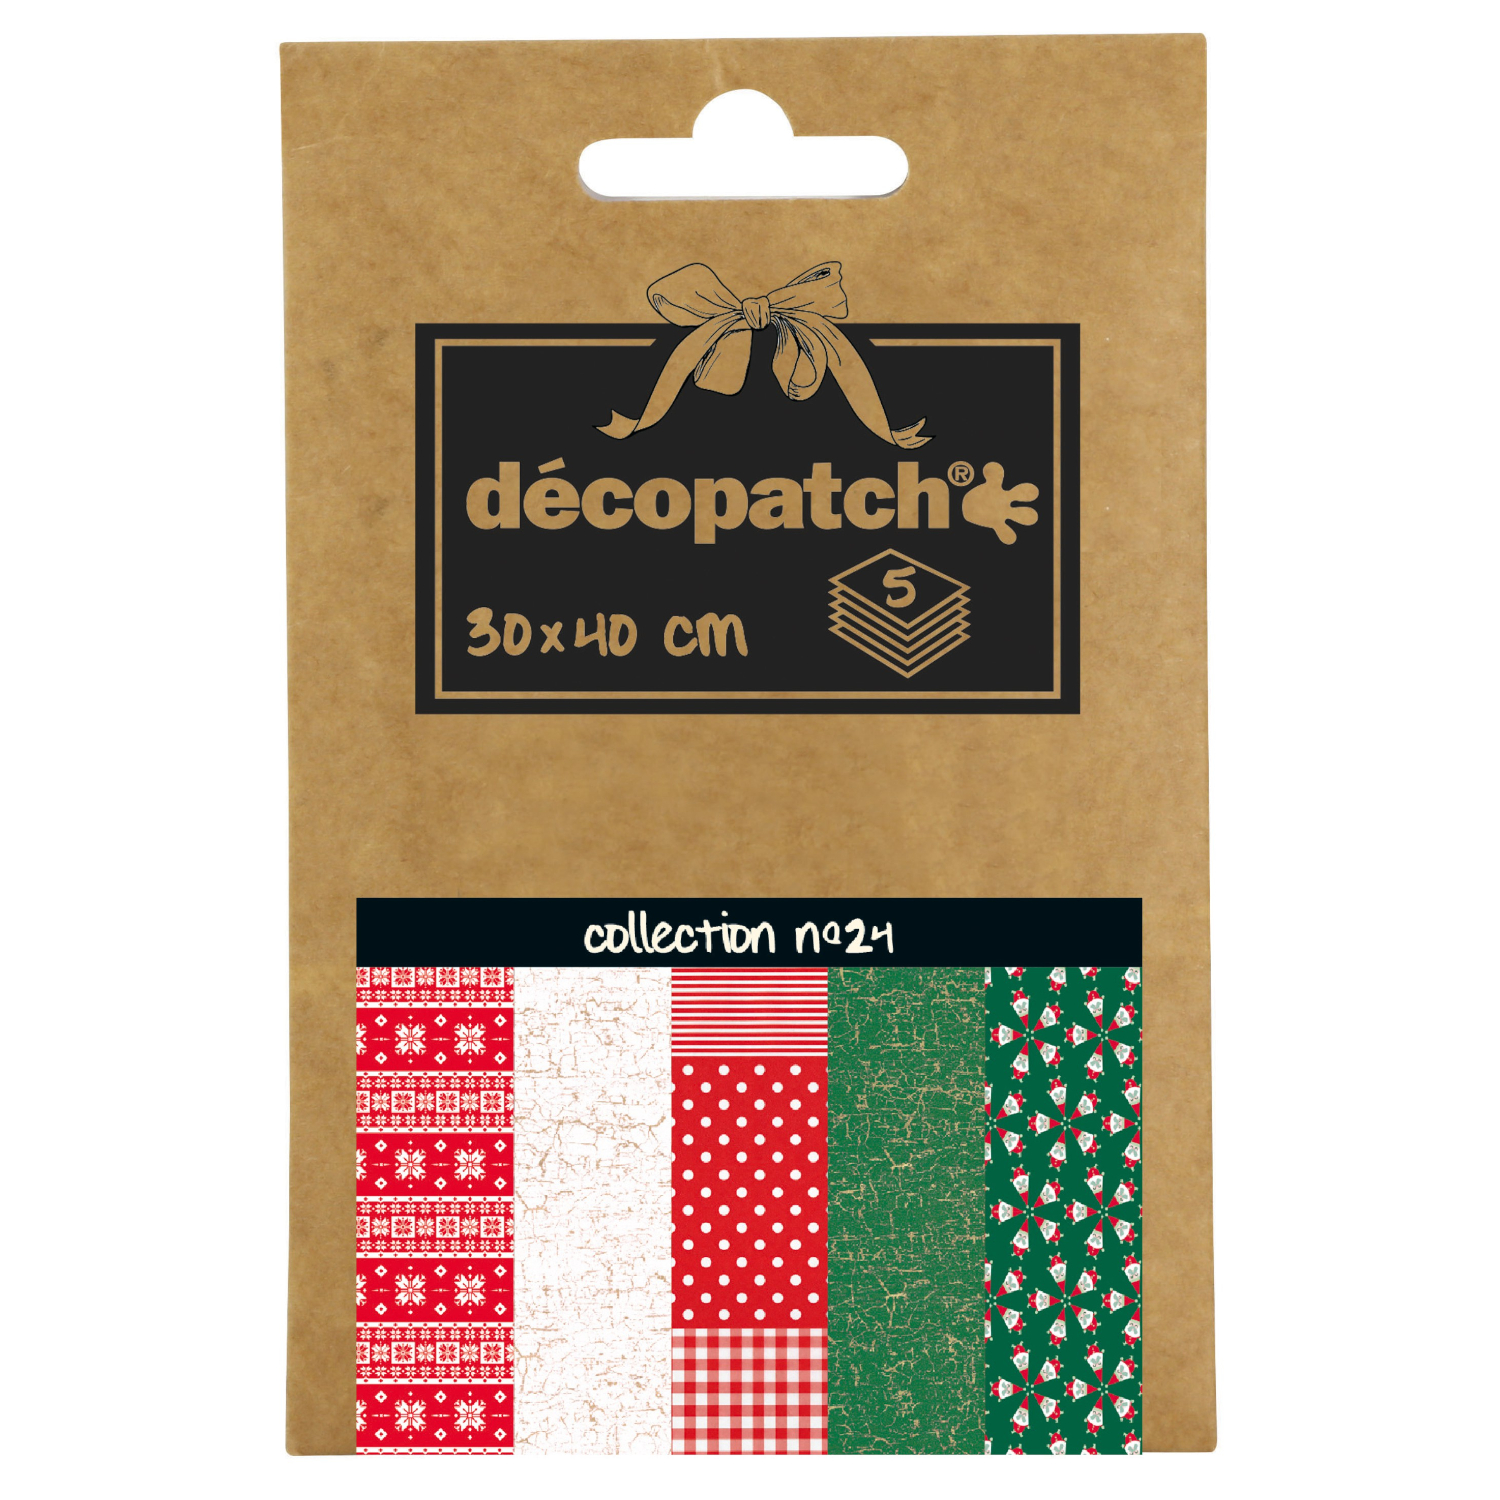 NEU Decoupage- / Decopatch-Papier Pocket-Sortierung, 5 Bogen 30 x 40 cm, Motive: 672, 444, 484, 445, 829